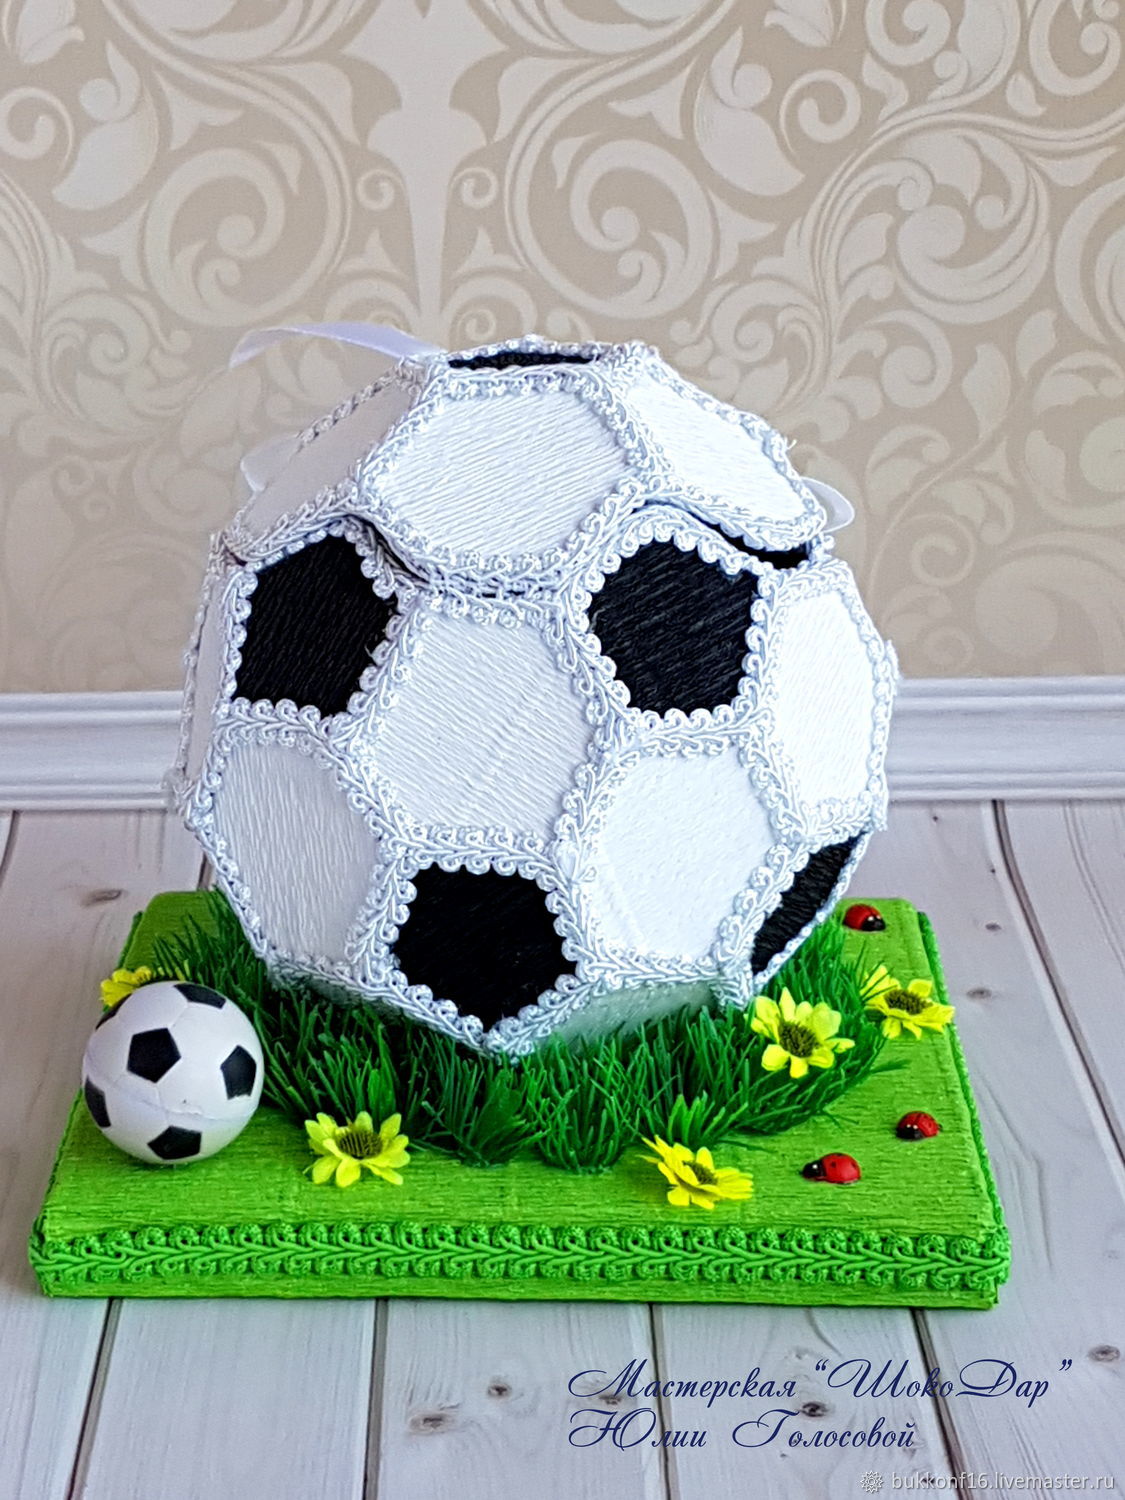 Футбольный мячик из белого фигурного шоколада 50г